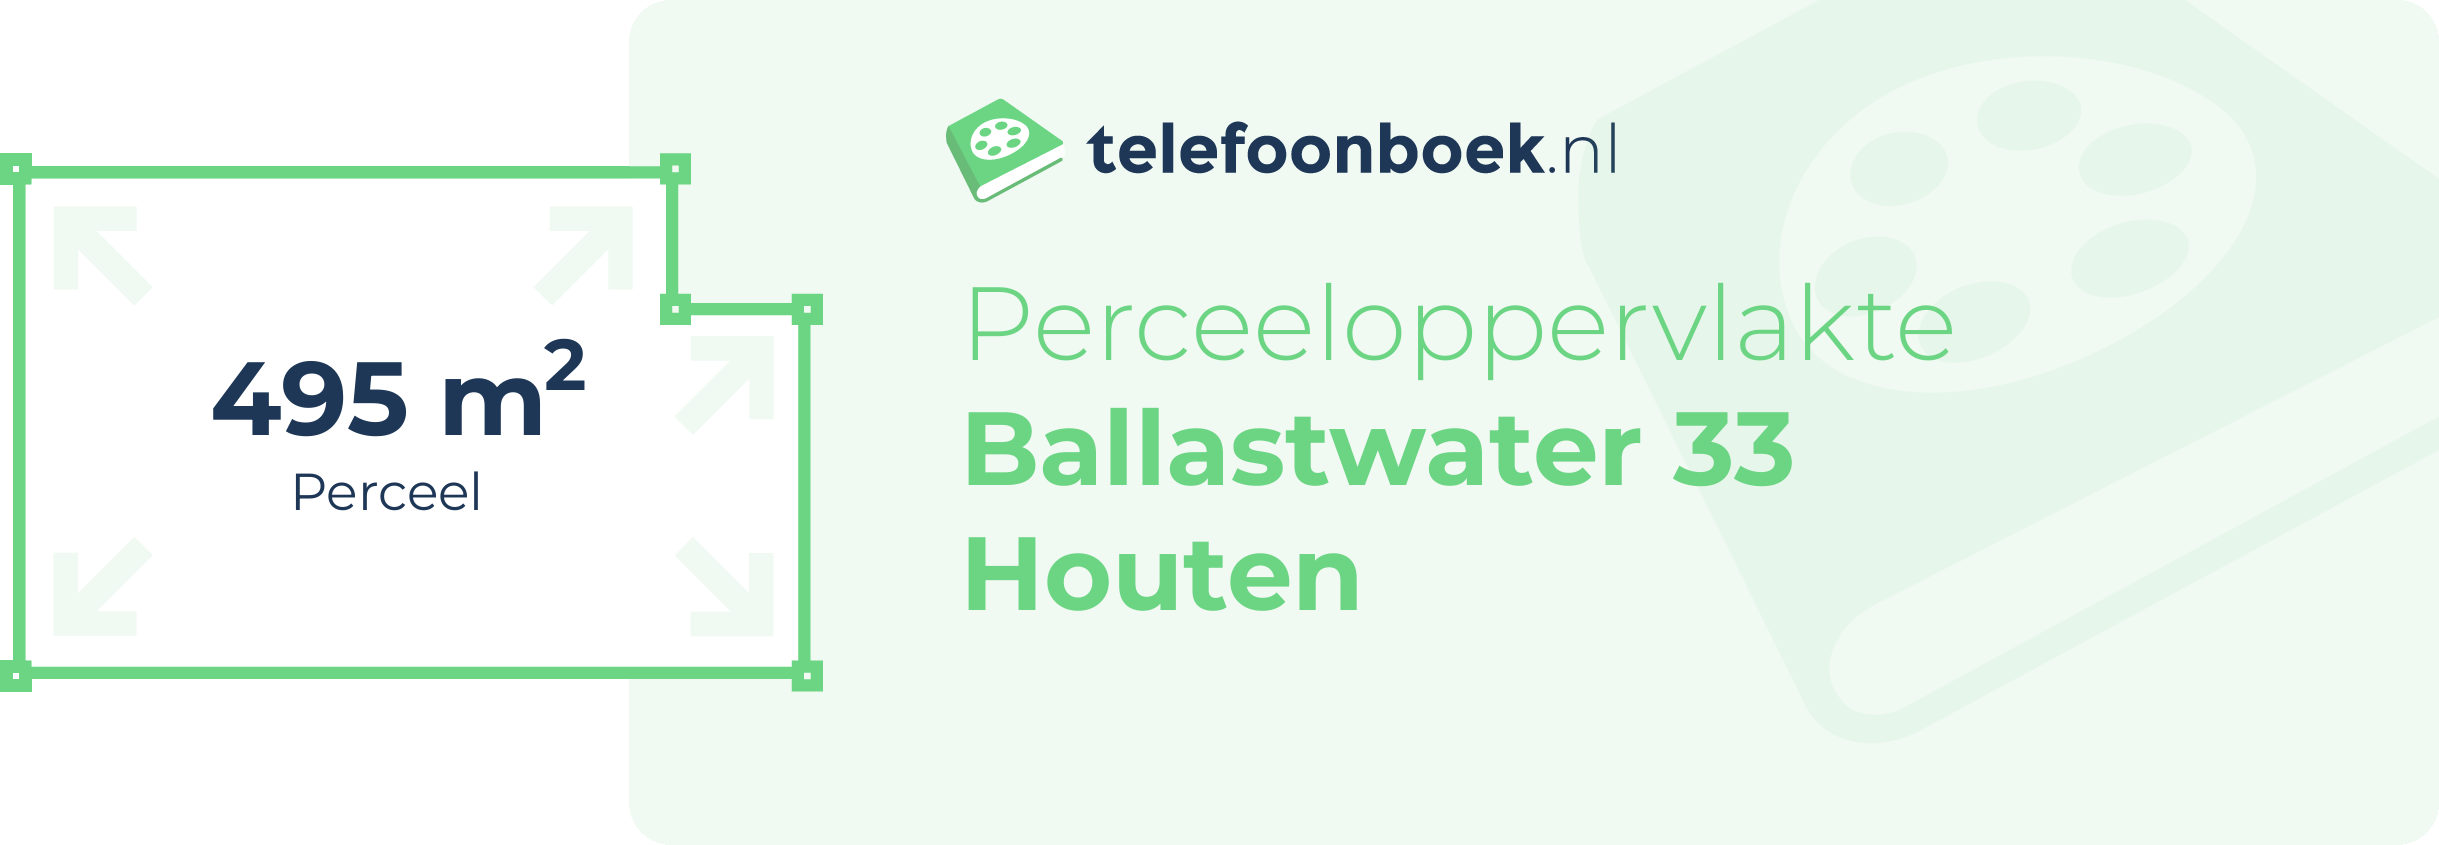 Perceeloppervlakte Ballastwater 33 Houten